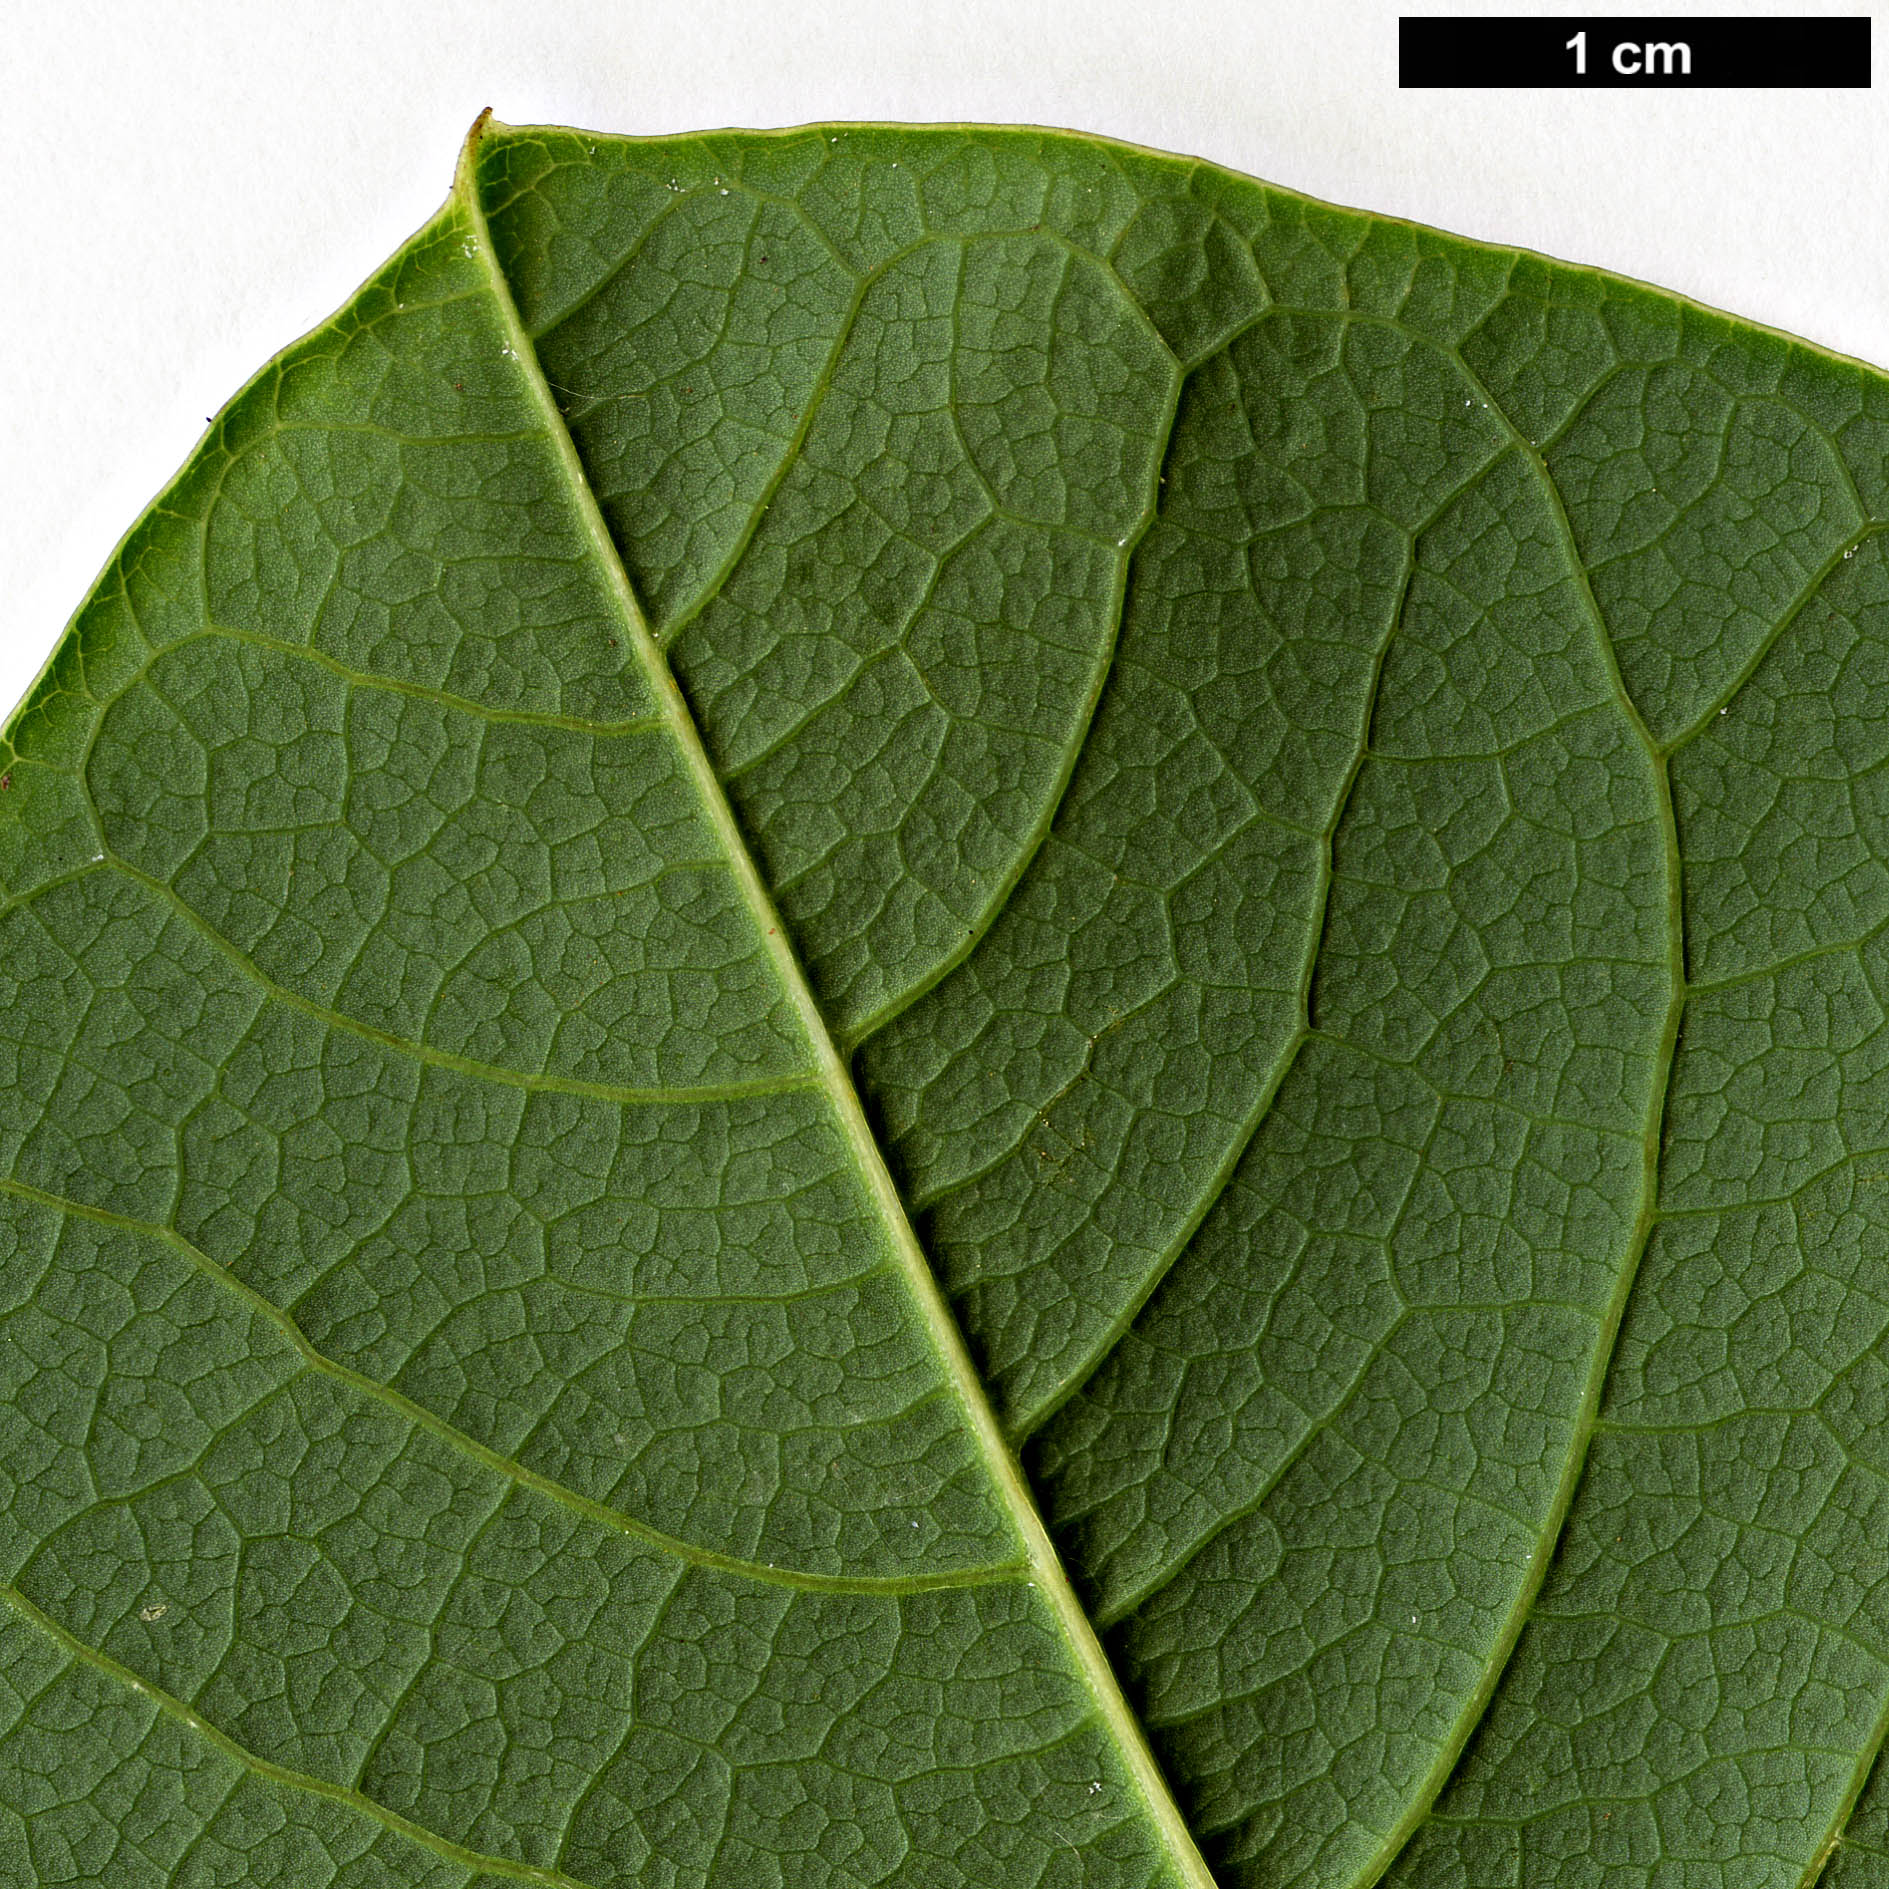 High resolution image: Family: Magnoliaceae - Genus: Magnolia - Taxon: sargentiana